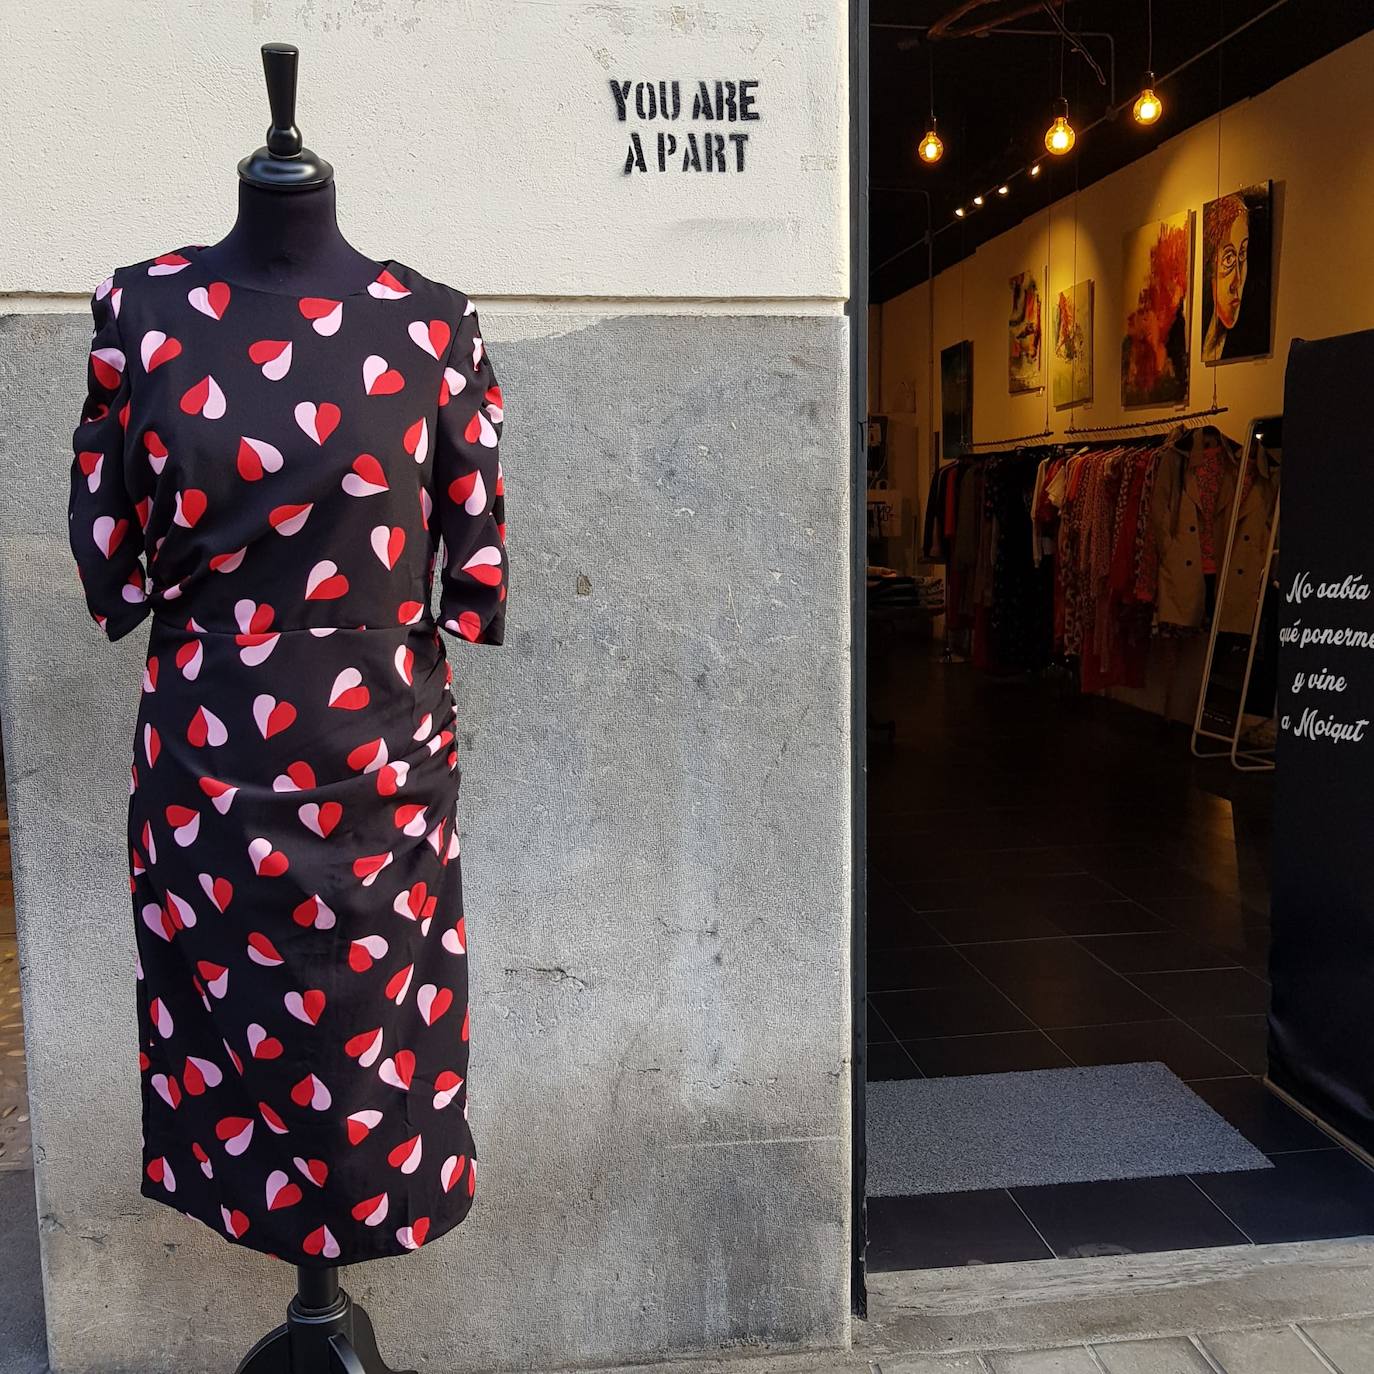 Fotos: Estos son los vestidos te esperan en tiendas vizcaínas tras la cuarentena El Correo